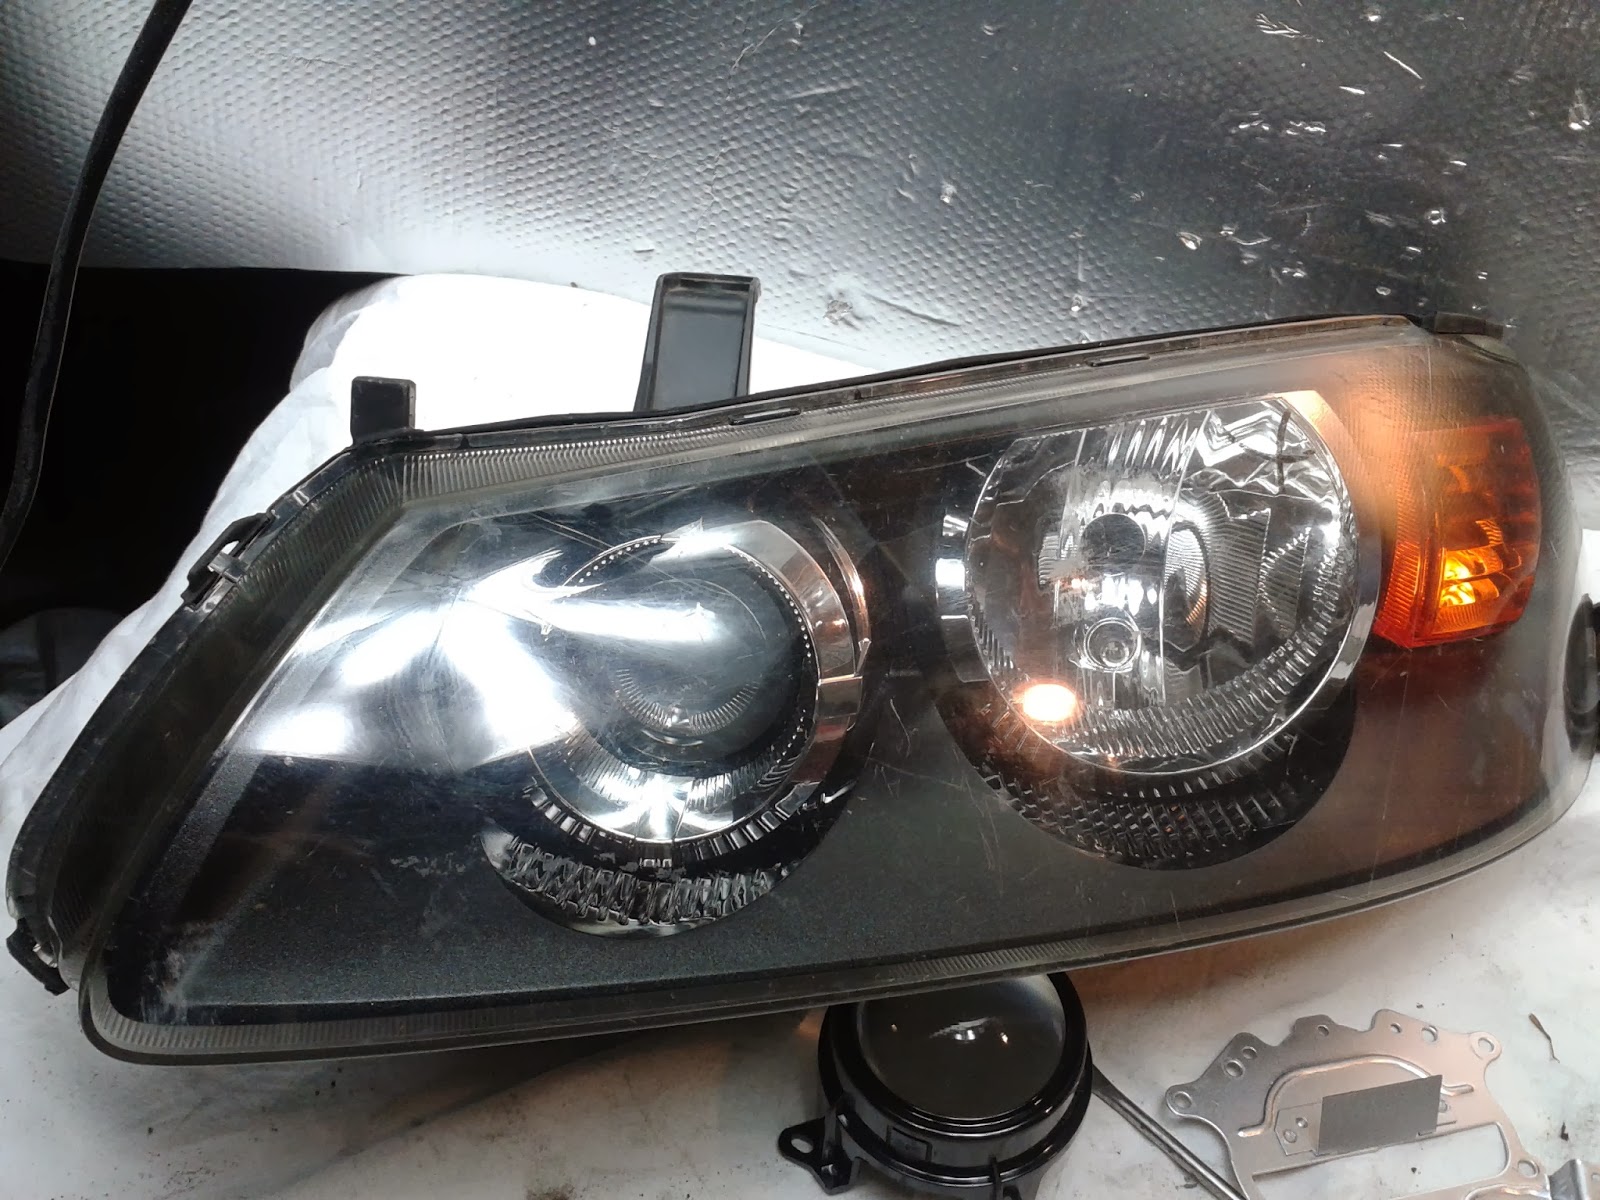 Reganeracja Reflektorów: Co Się Dzieje Z Lampami Nissan Almera N16